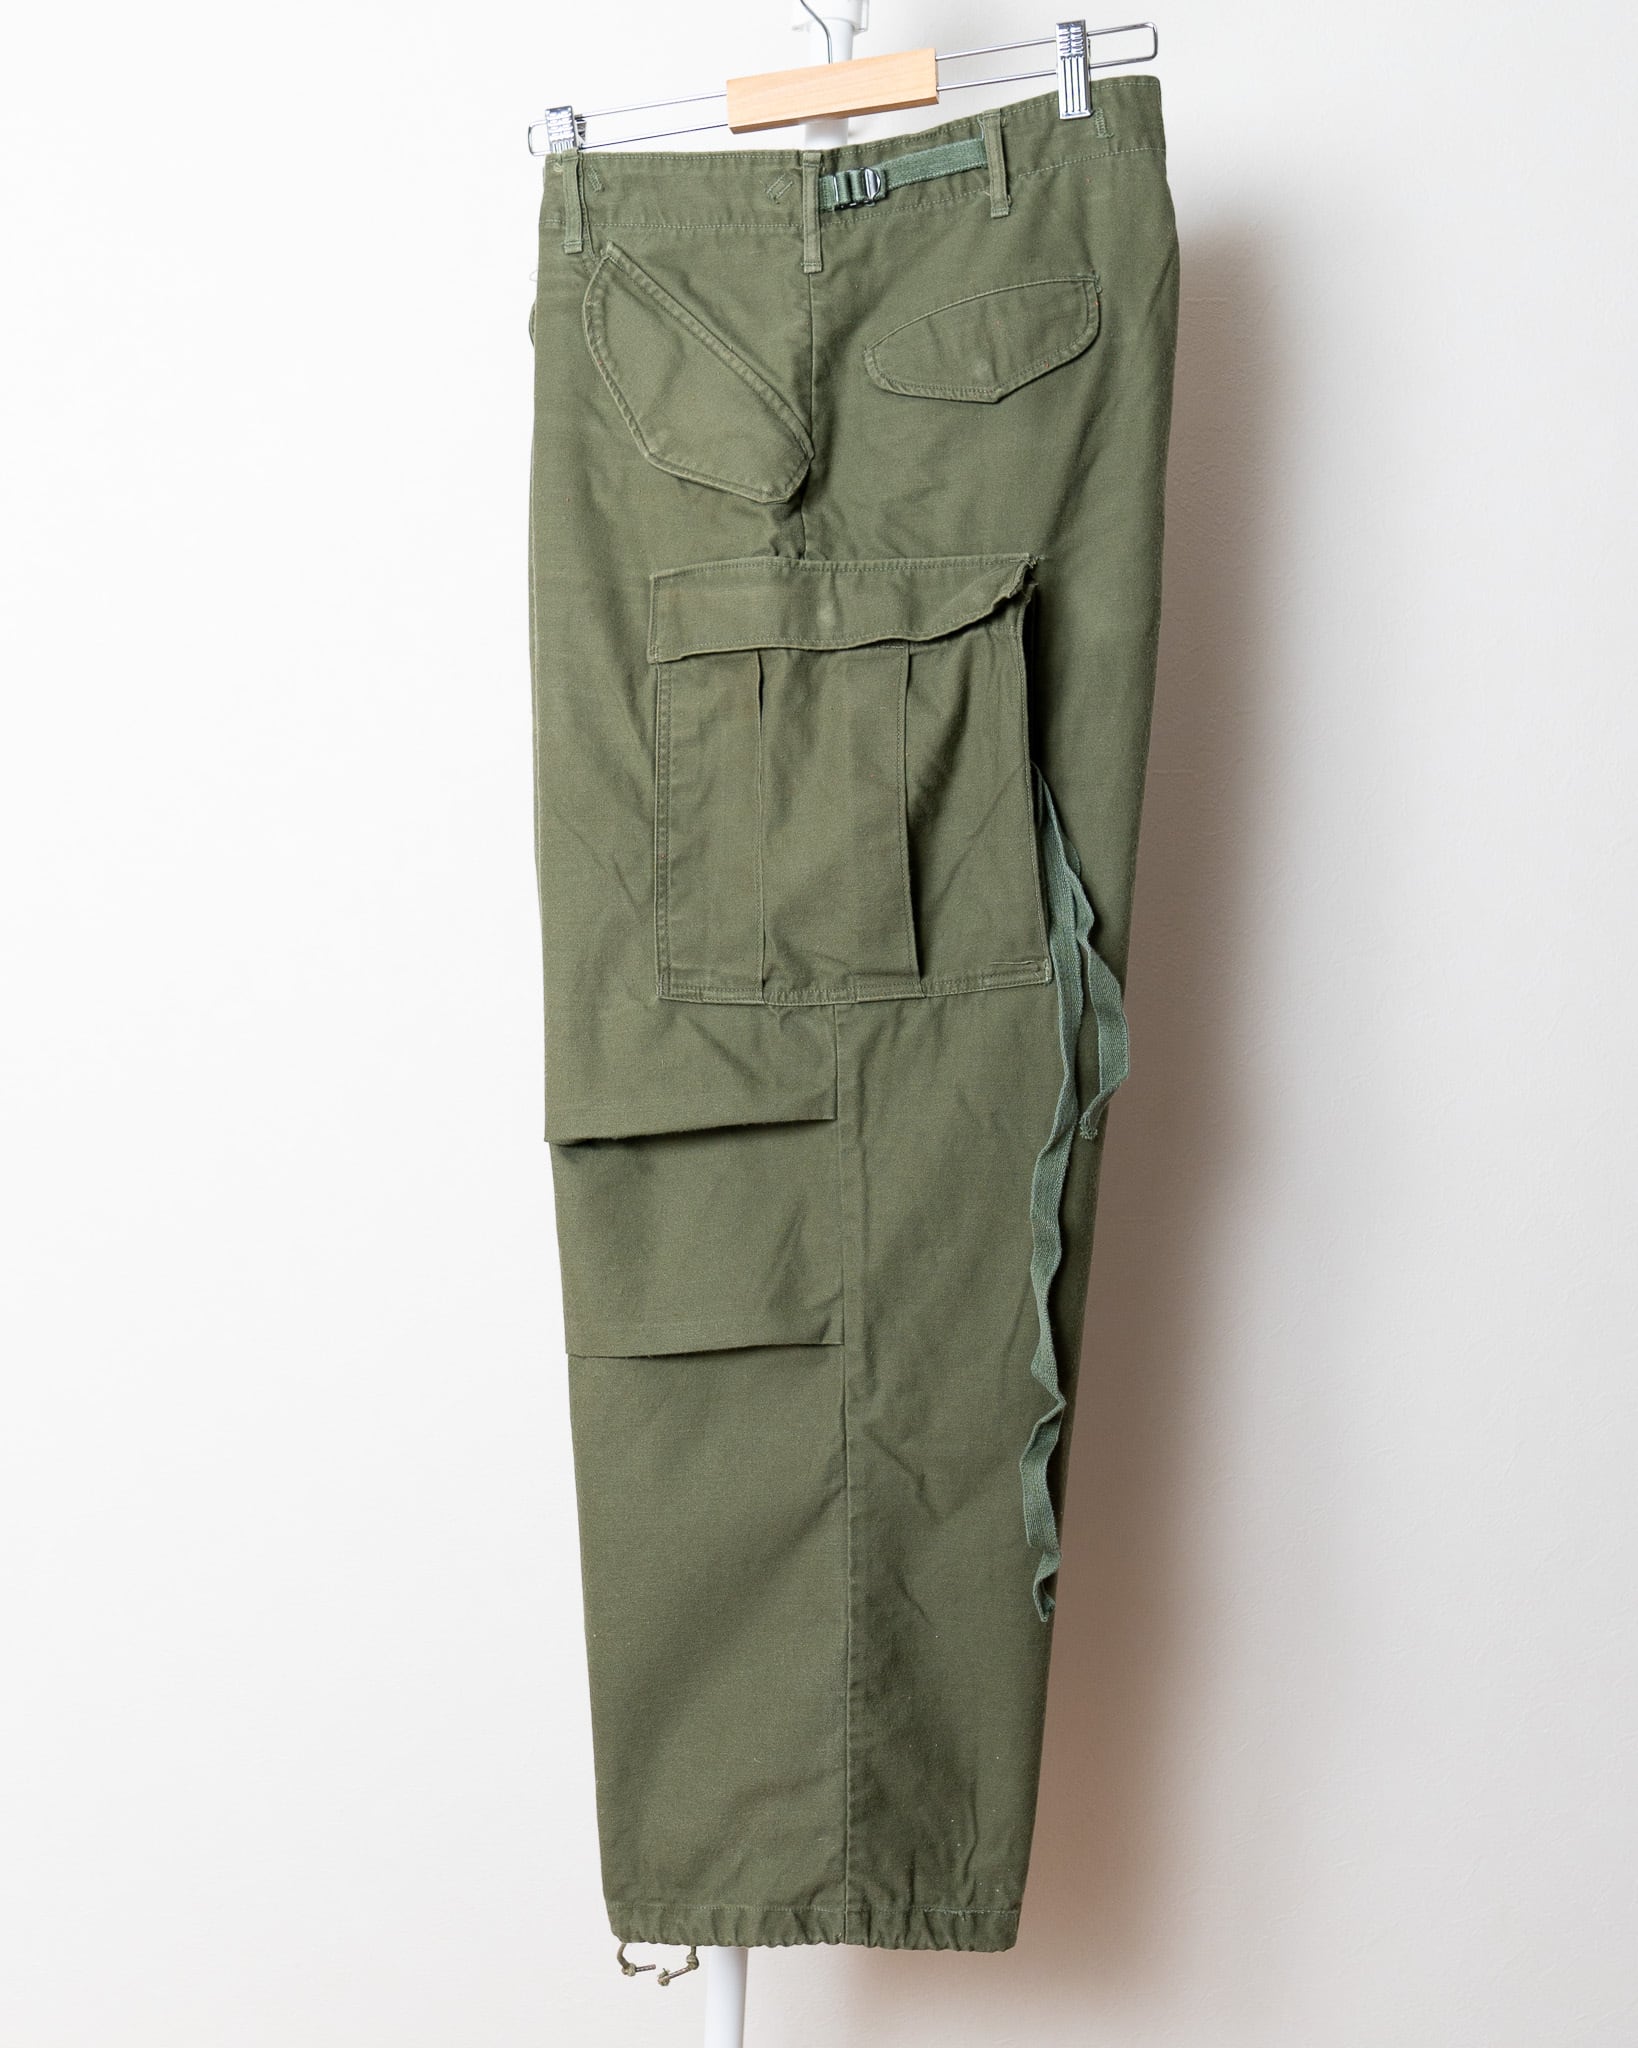 M-R】U.S.Army M-65 Field Trousers Aluminum Zipper 